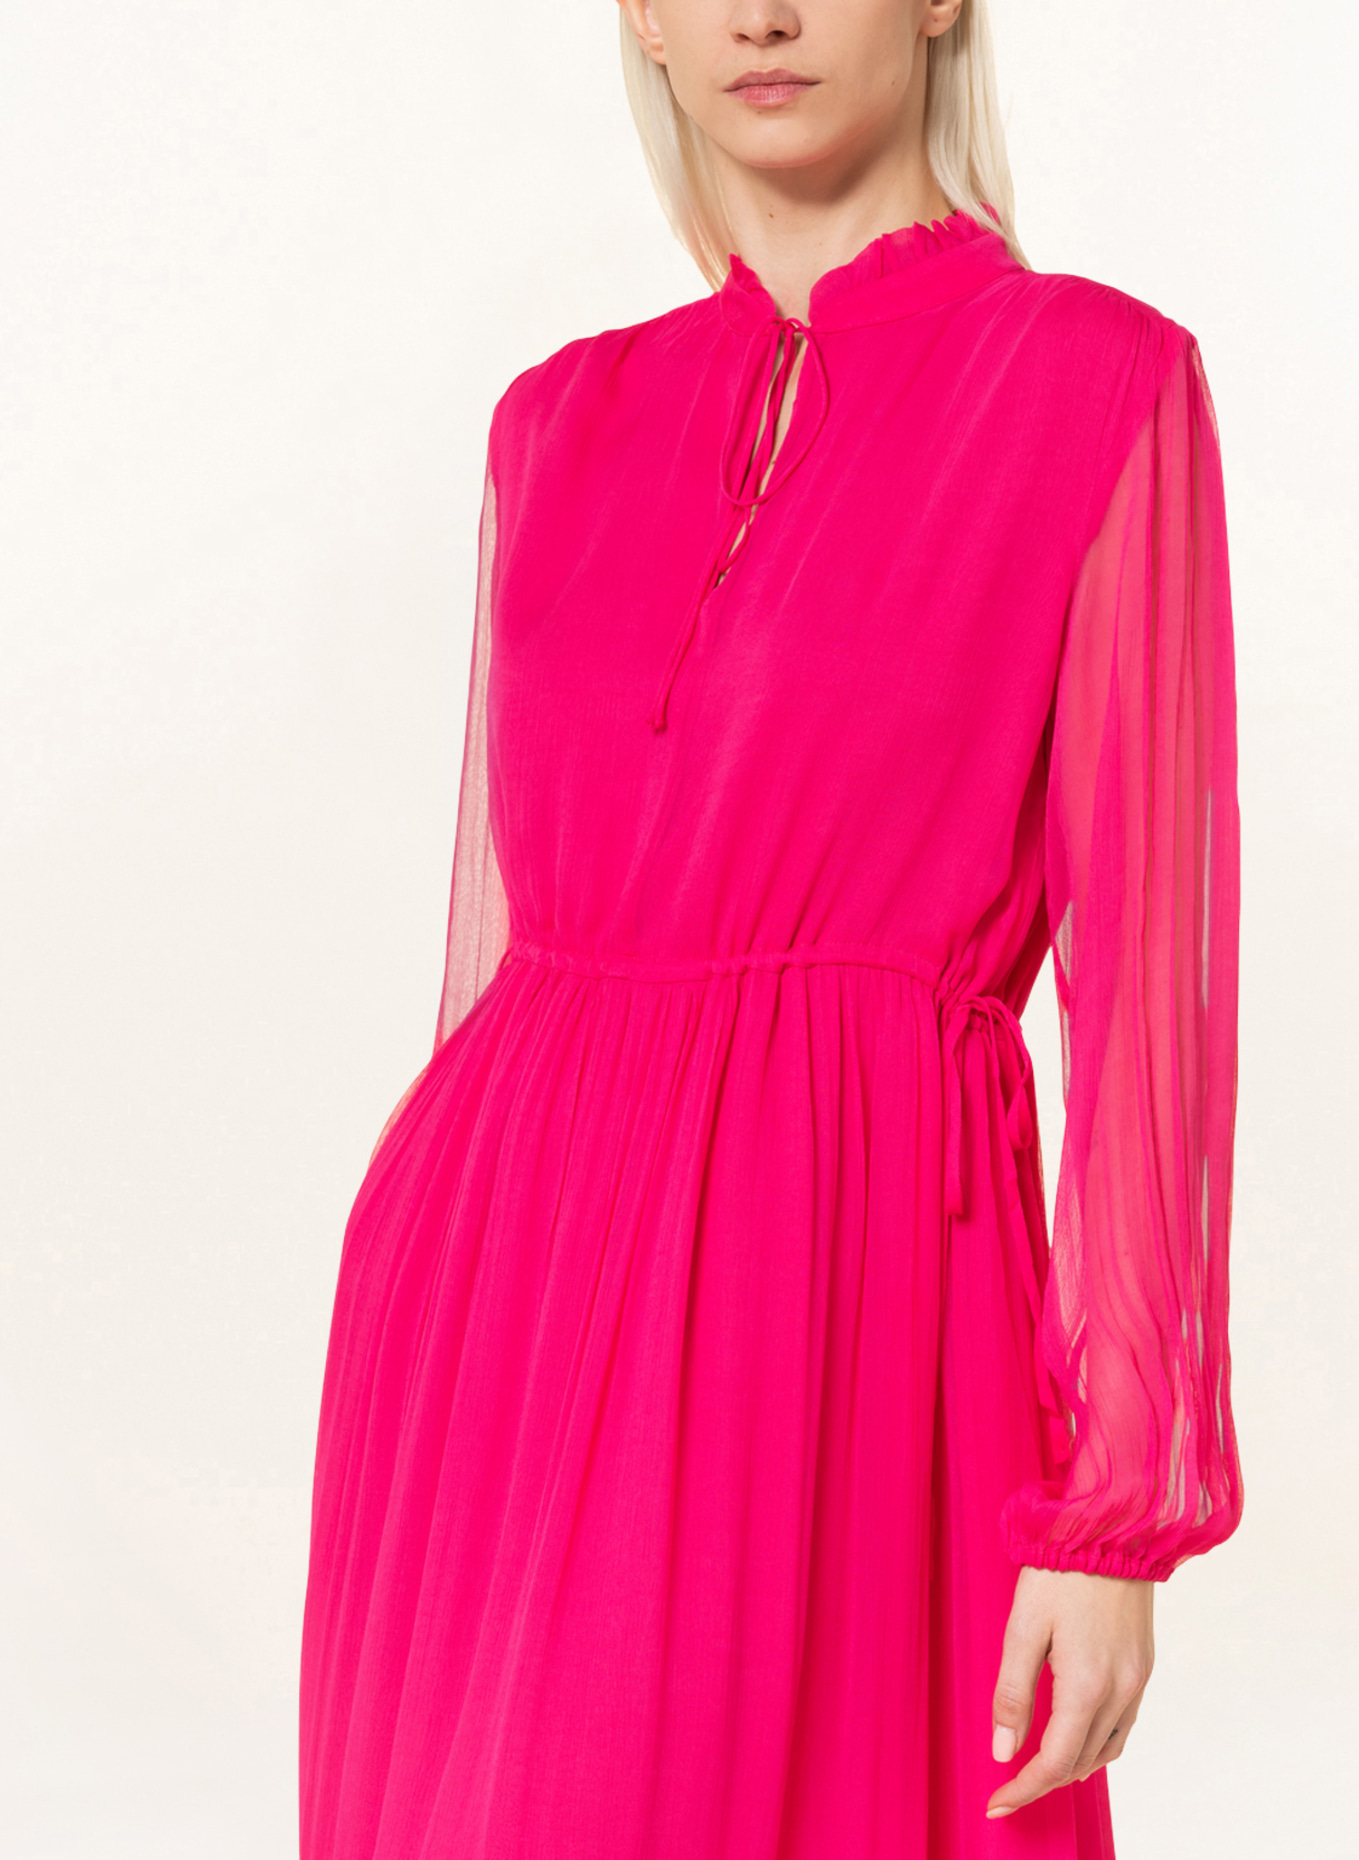 MRS & HUGS Dress, Color: PINK (Image 4)